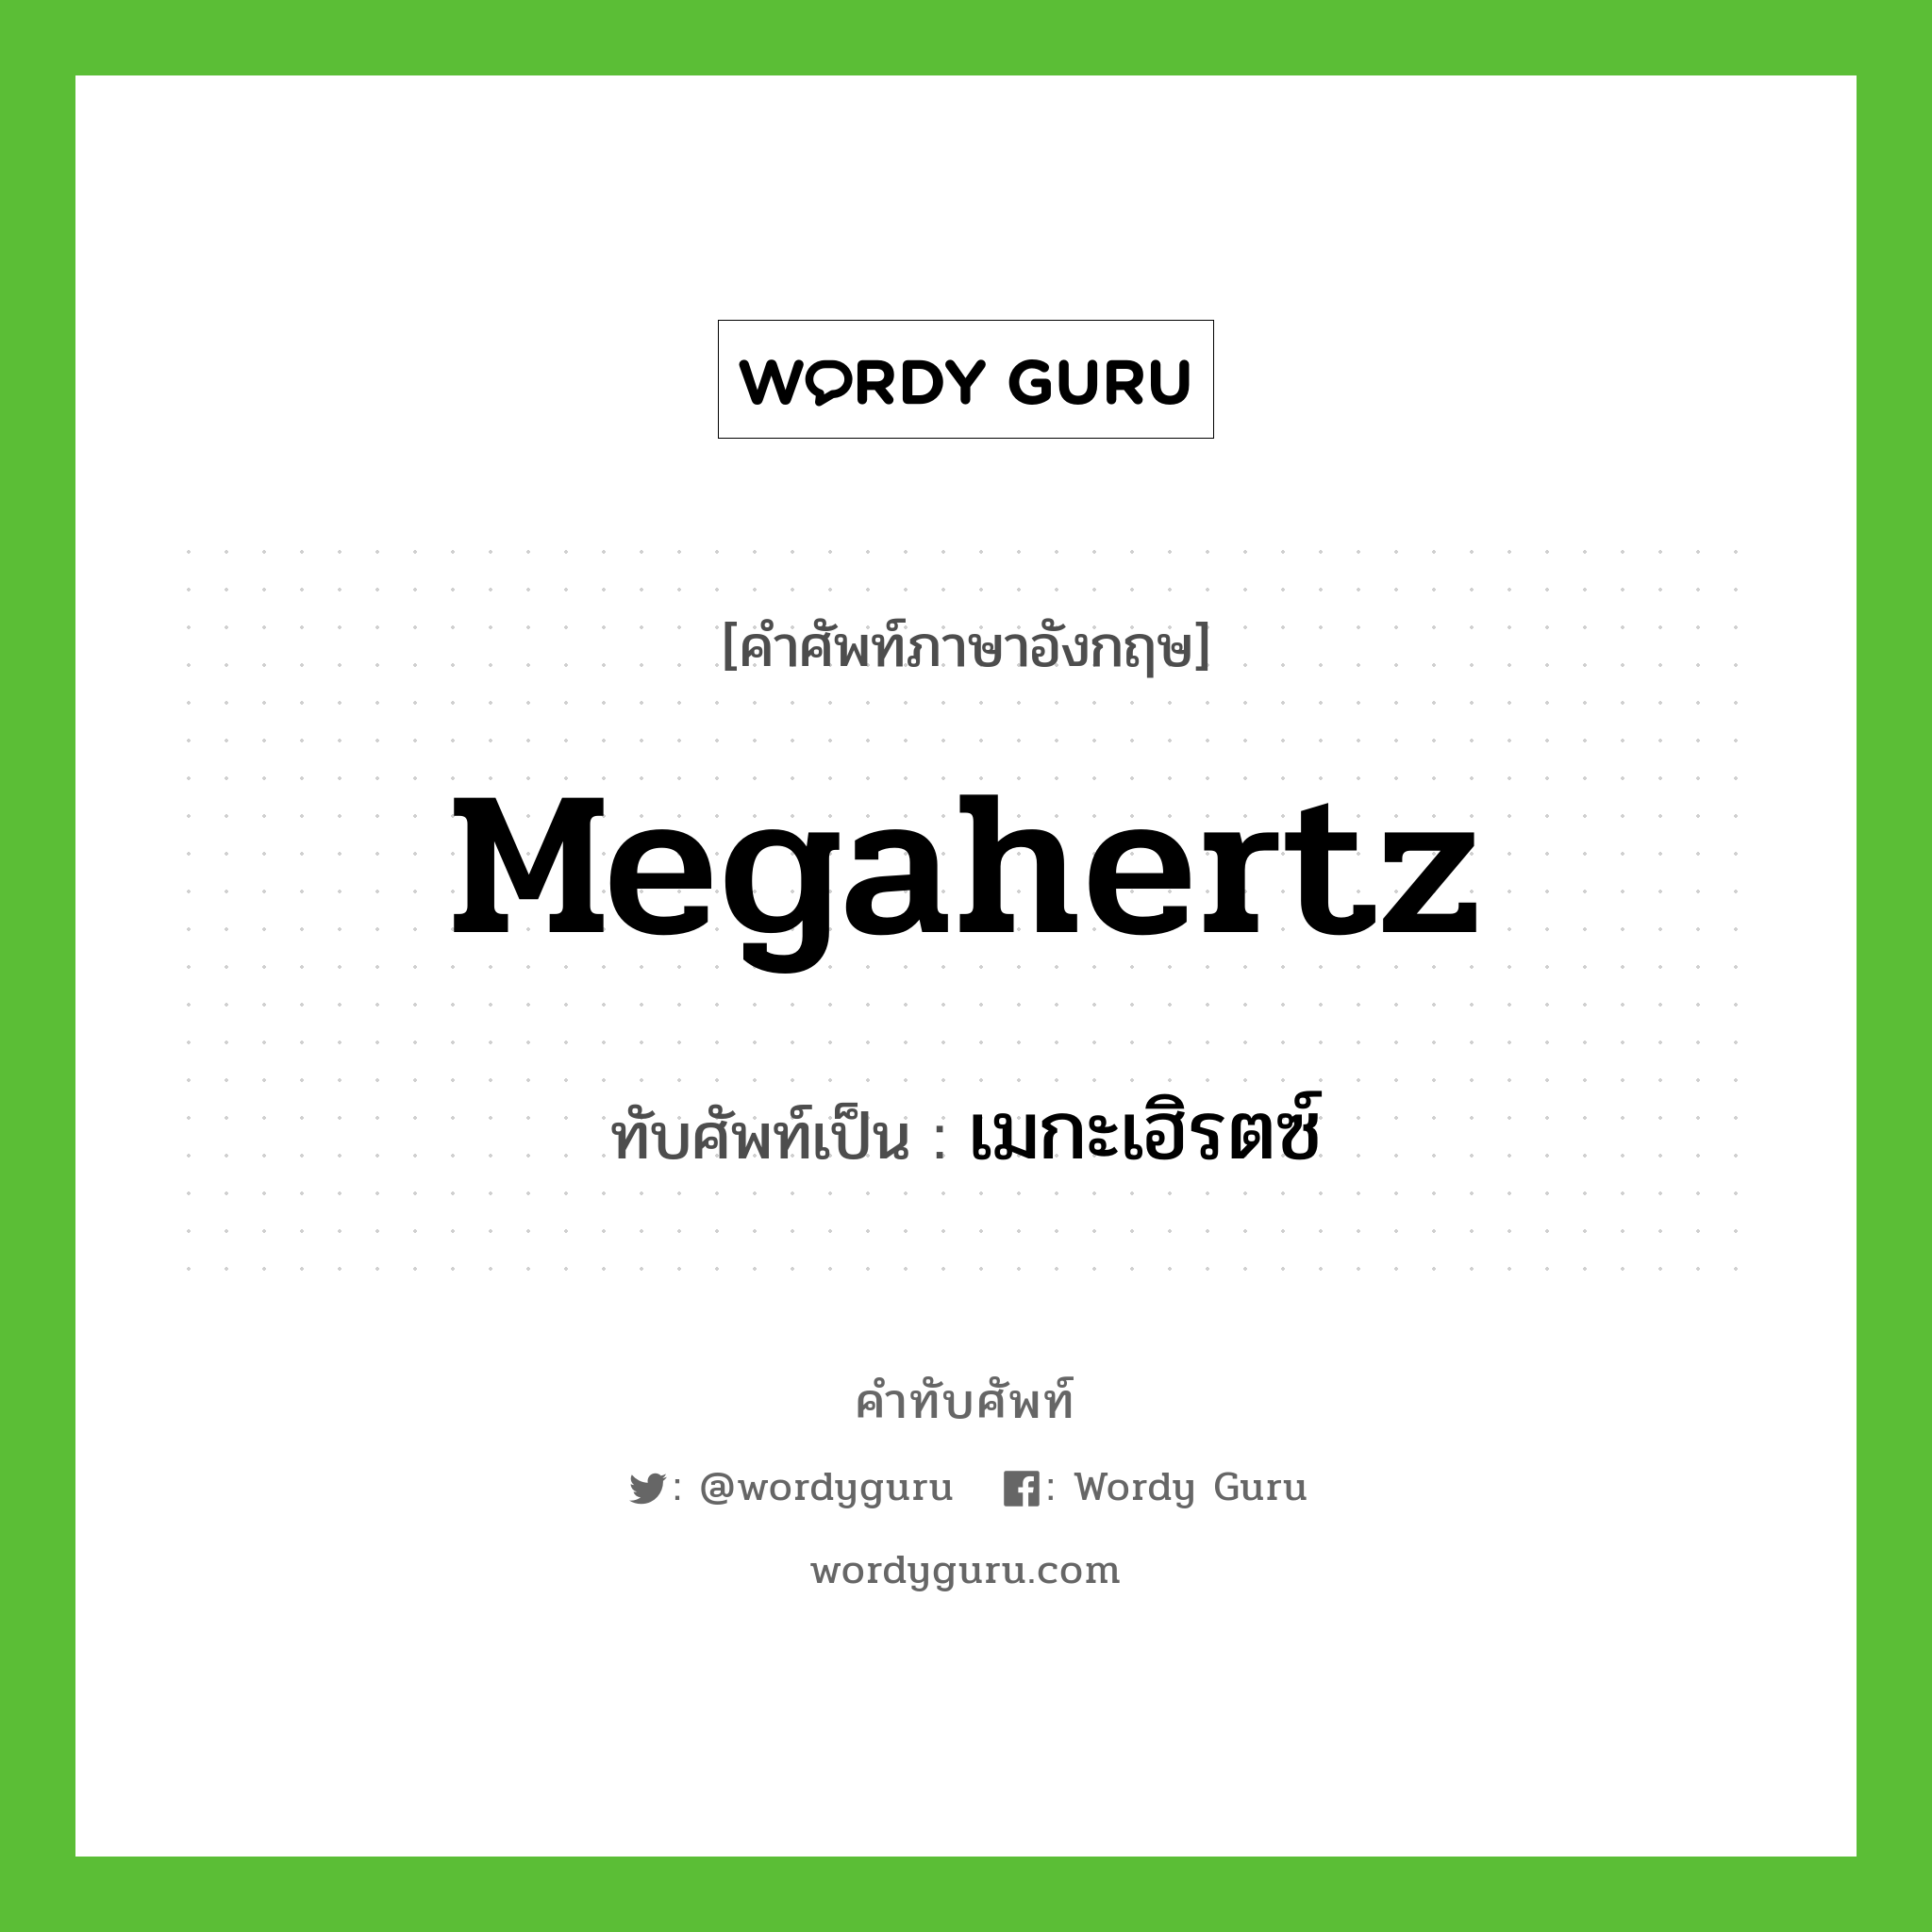 megahertz เขียนเป็นคำไทยว่าอะไร?, คำศัพท์ภาษาอังกฤษ megahertz ทับศัพท์เป็น เมกะเฮิรตซ์